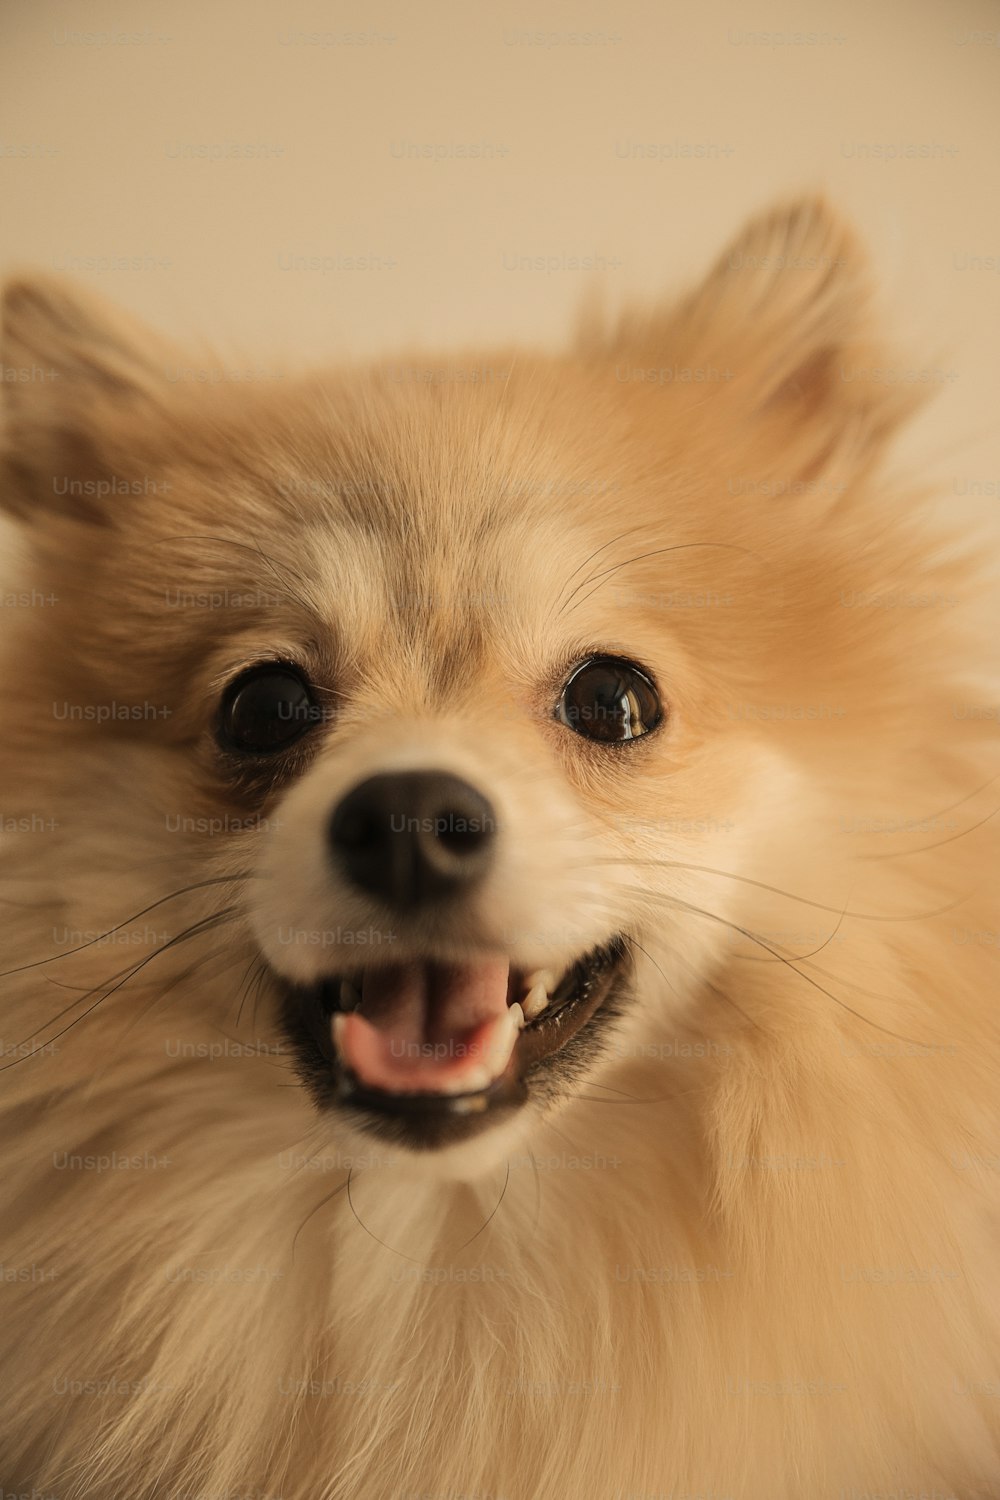 Un primer plano de un perro pequeño sonriendo